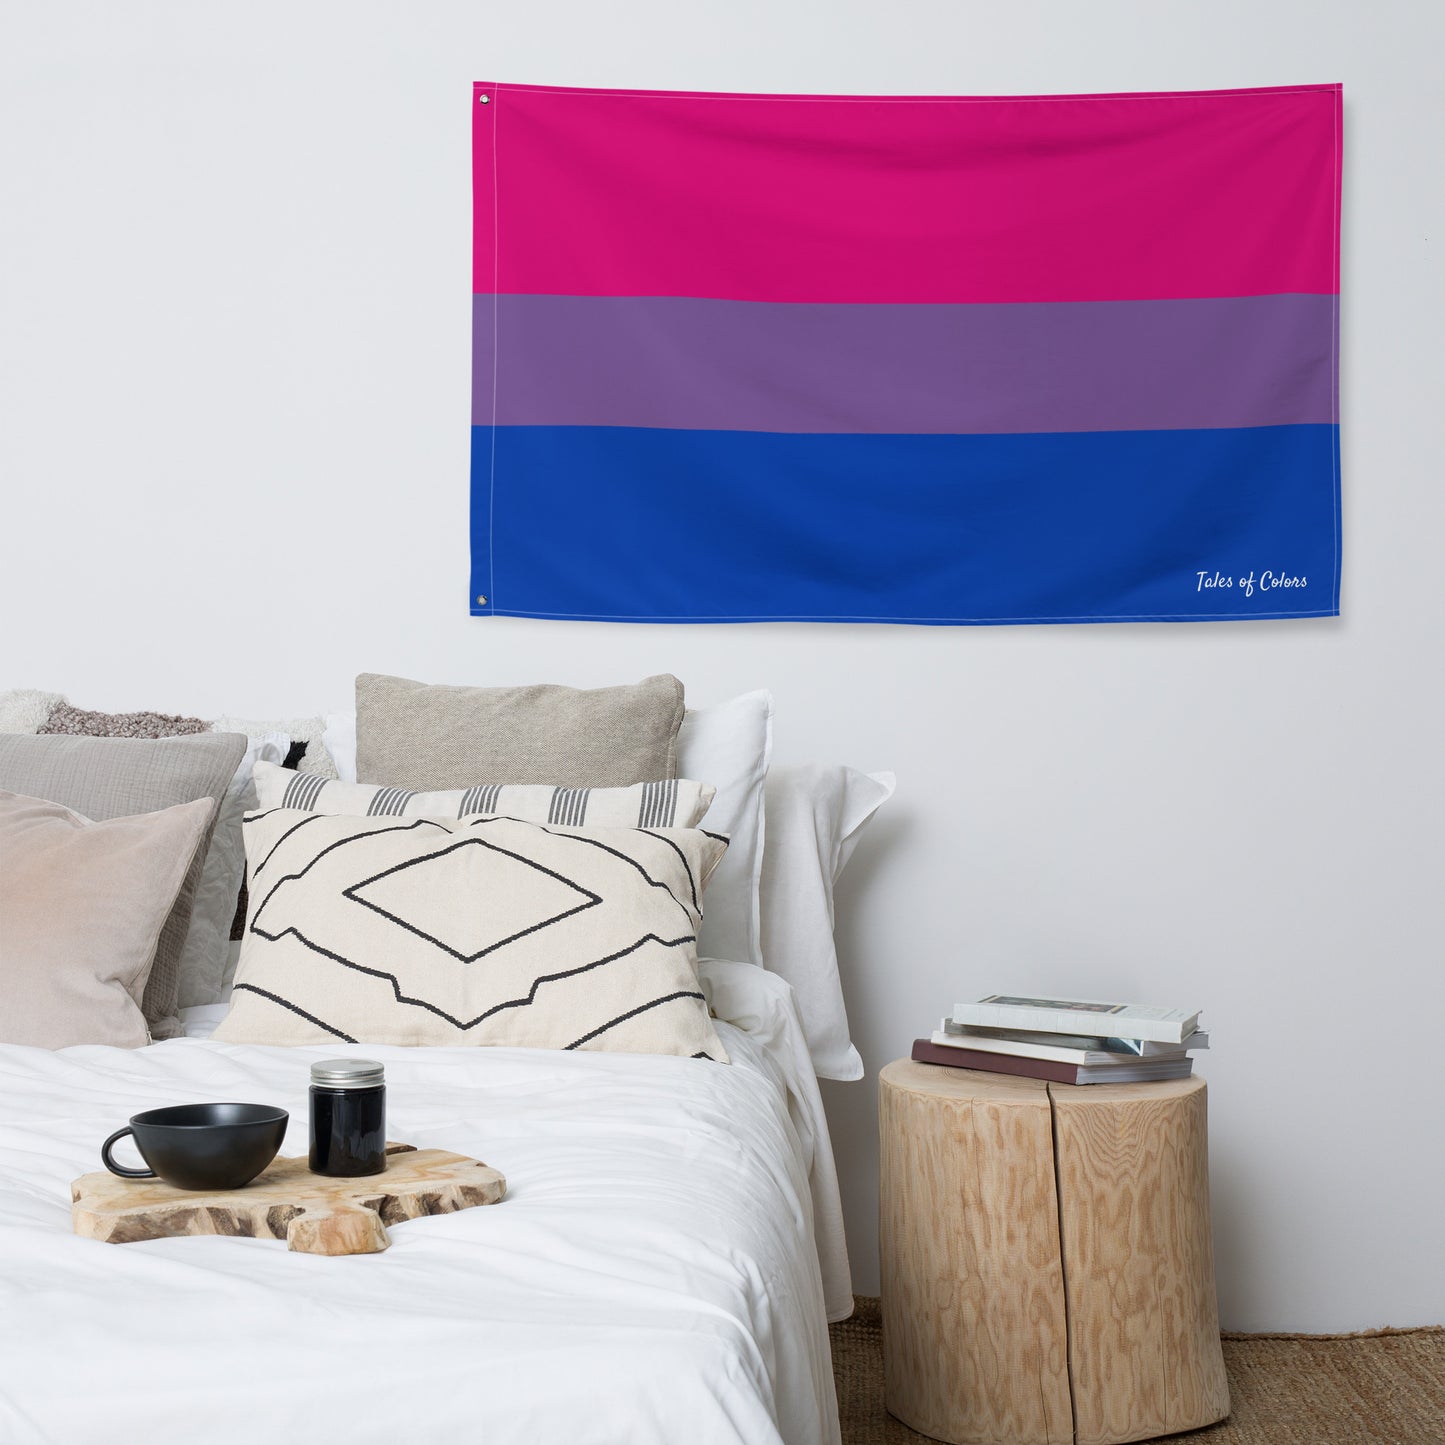 Bisexual Pride Flag